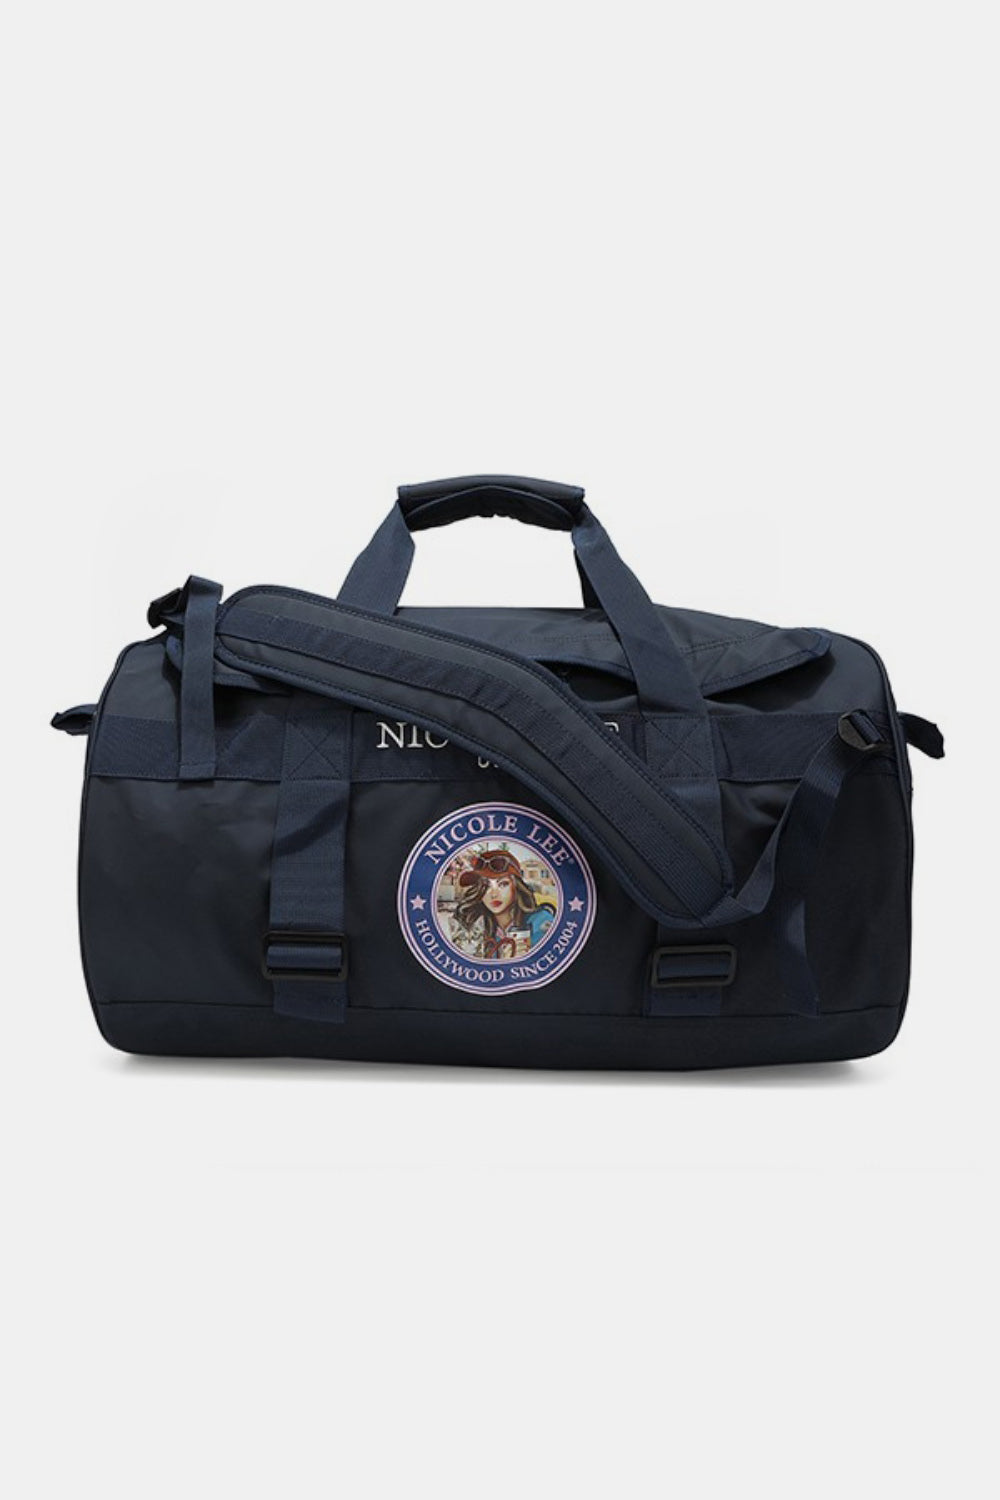 TEEK - NL Large Duffel Bag BAG TEEK Trend Navy  